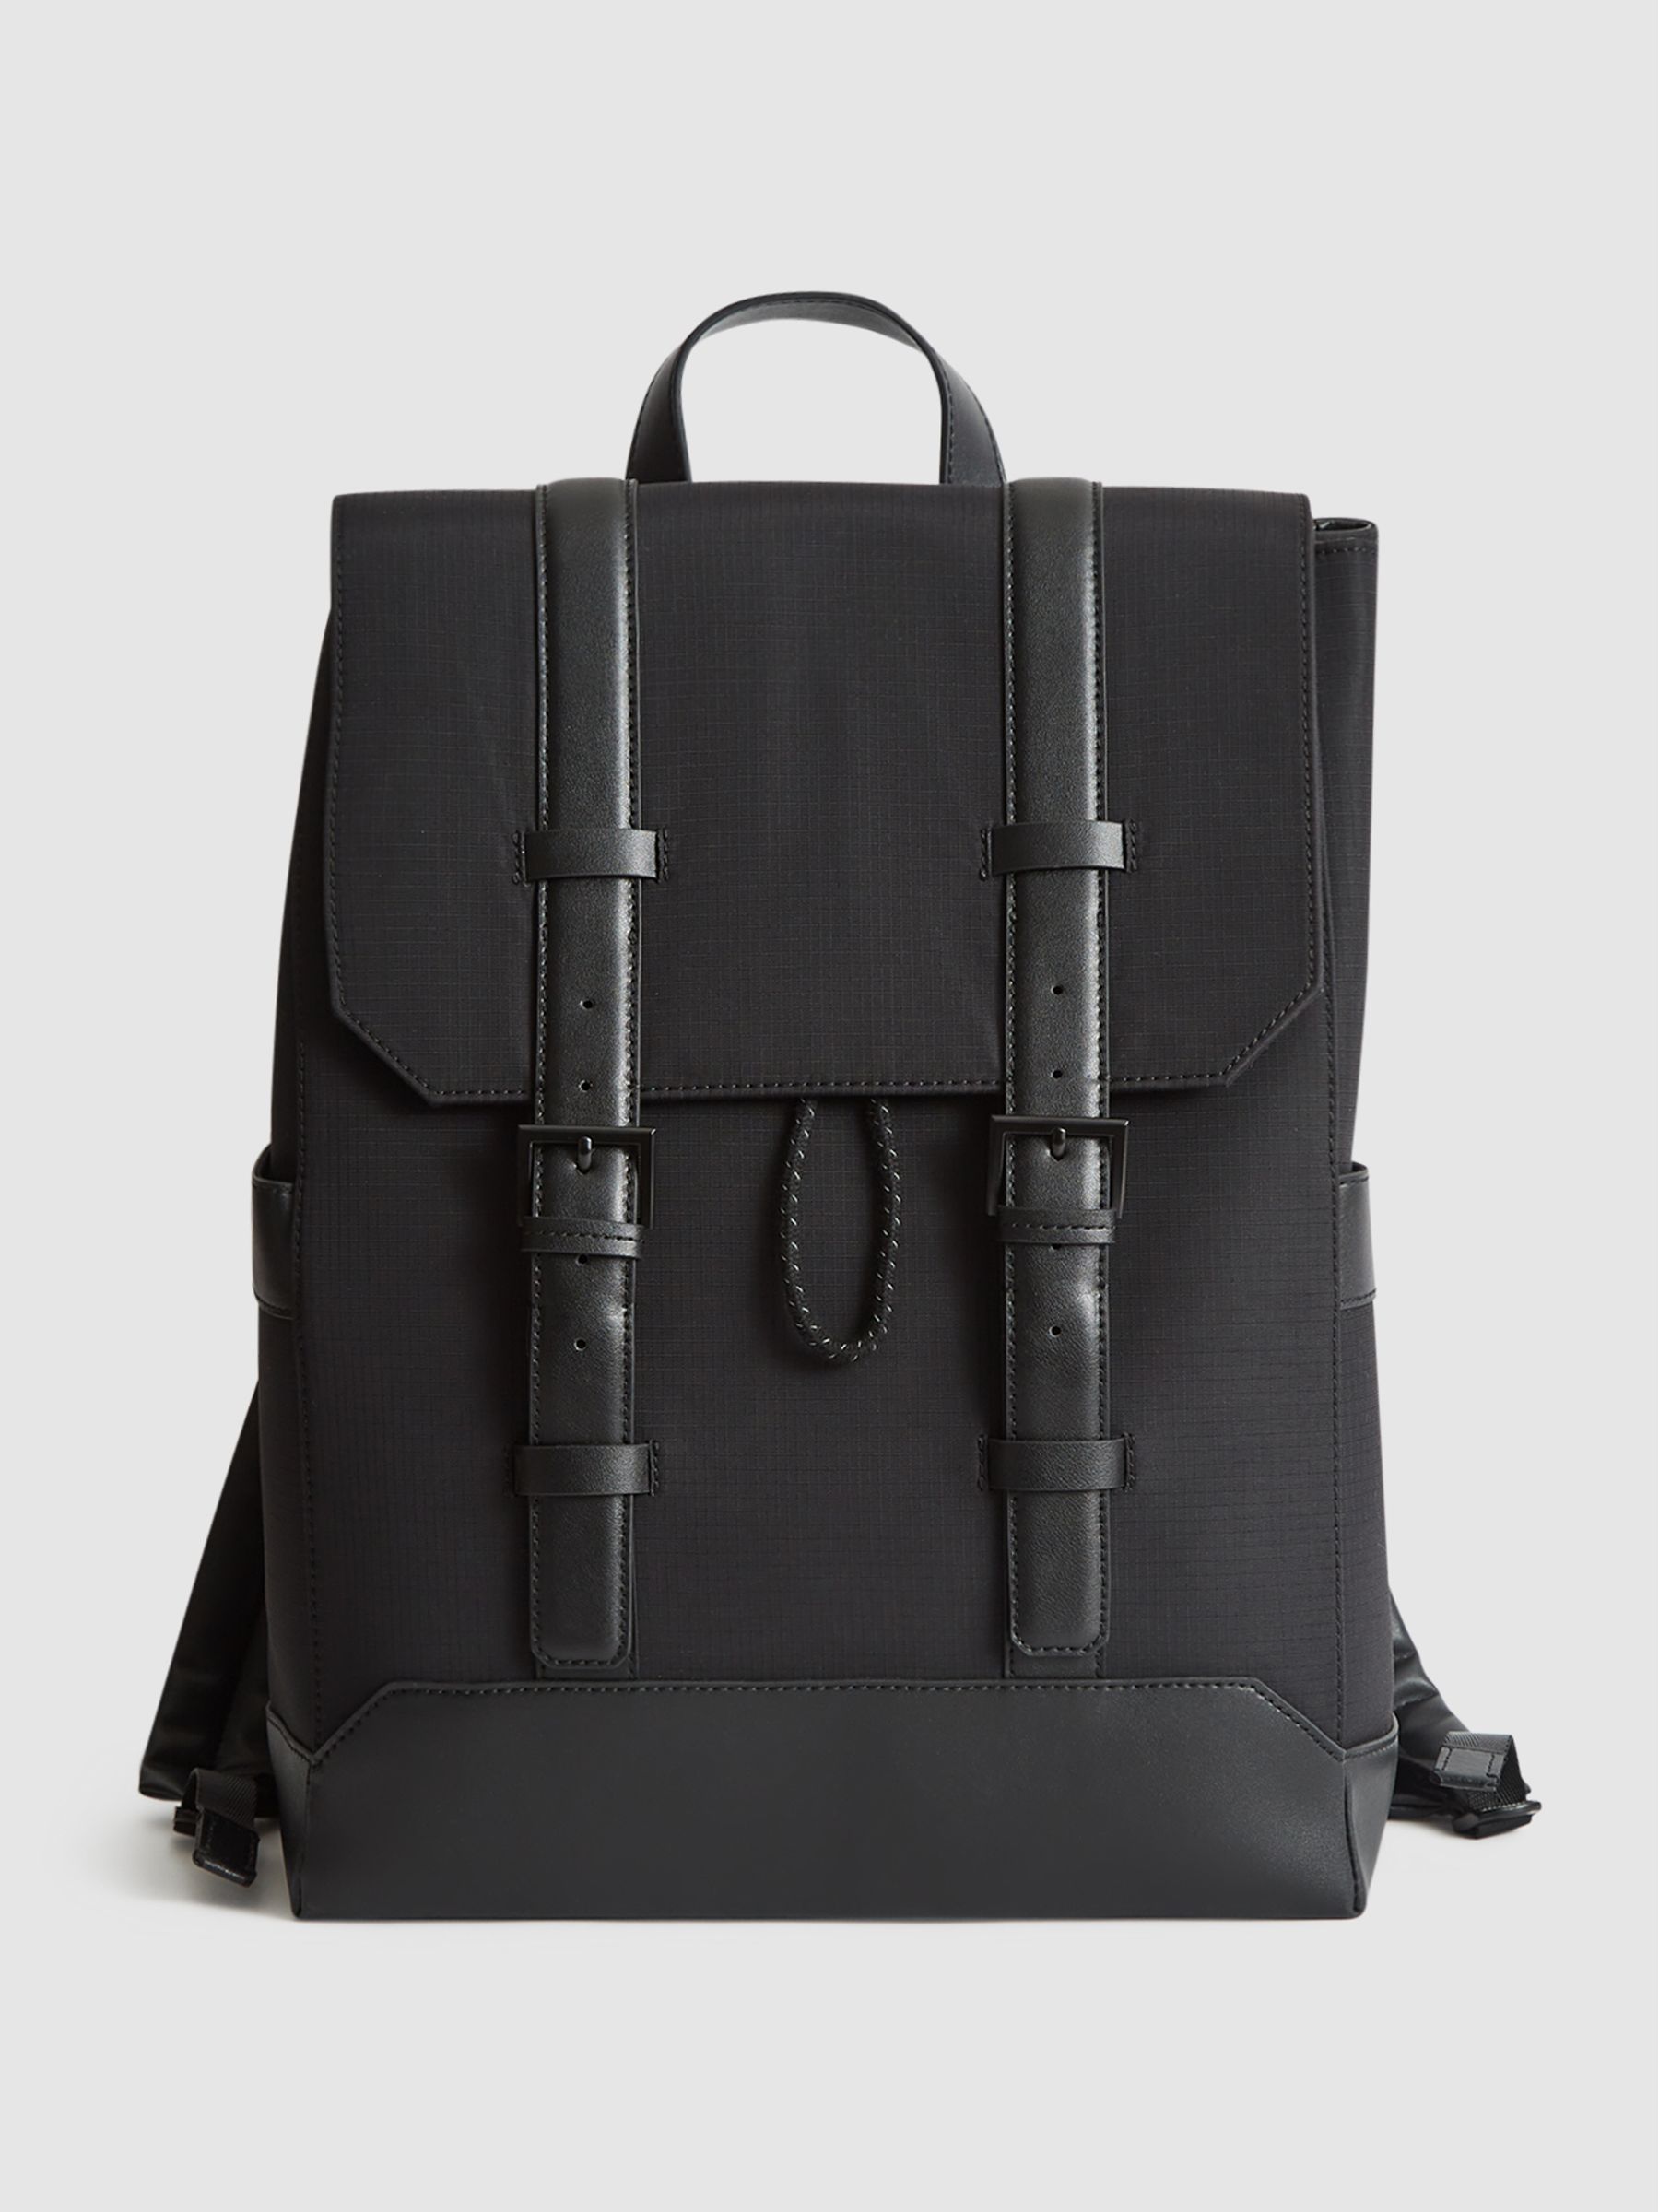 Reiss Bellingham Backpack Multi Pocket Nylon Backpack | REISS Australia